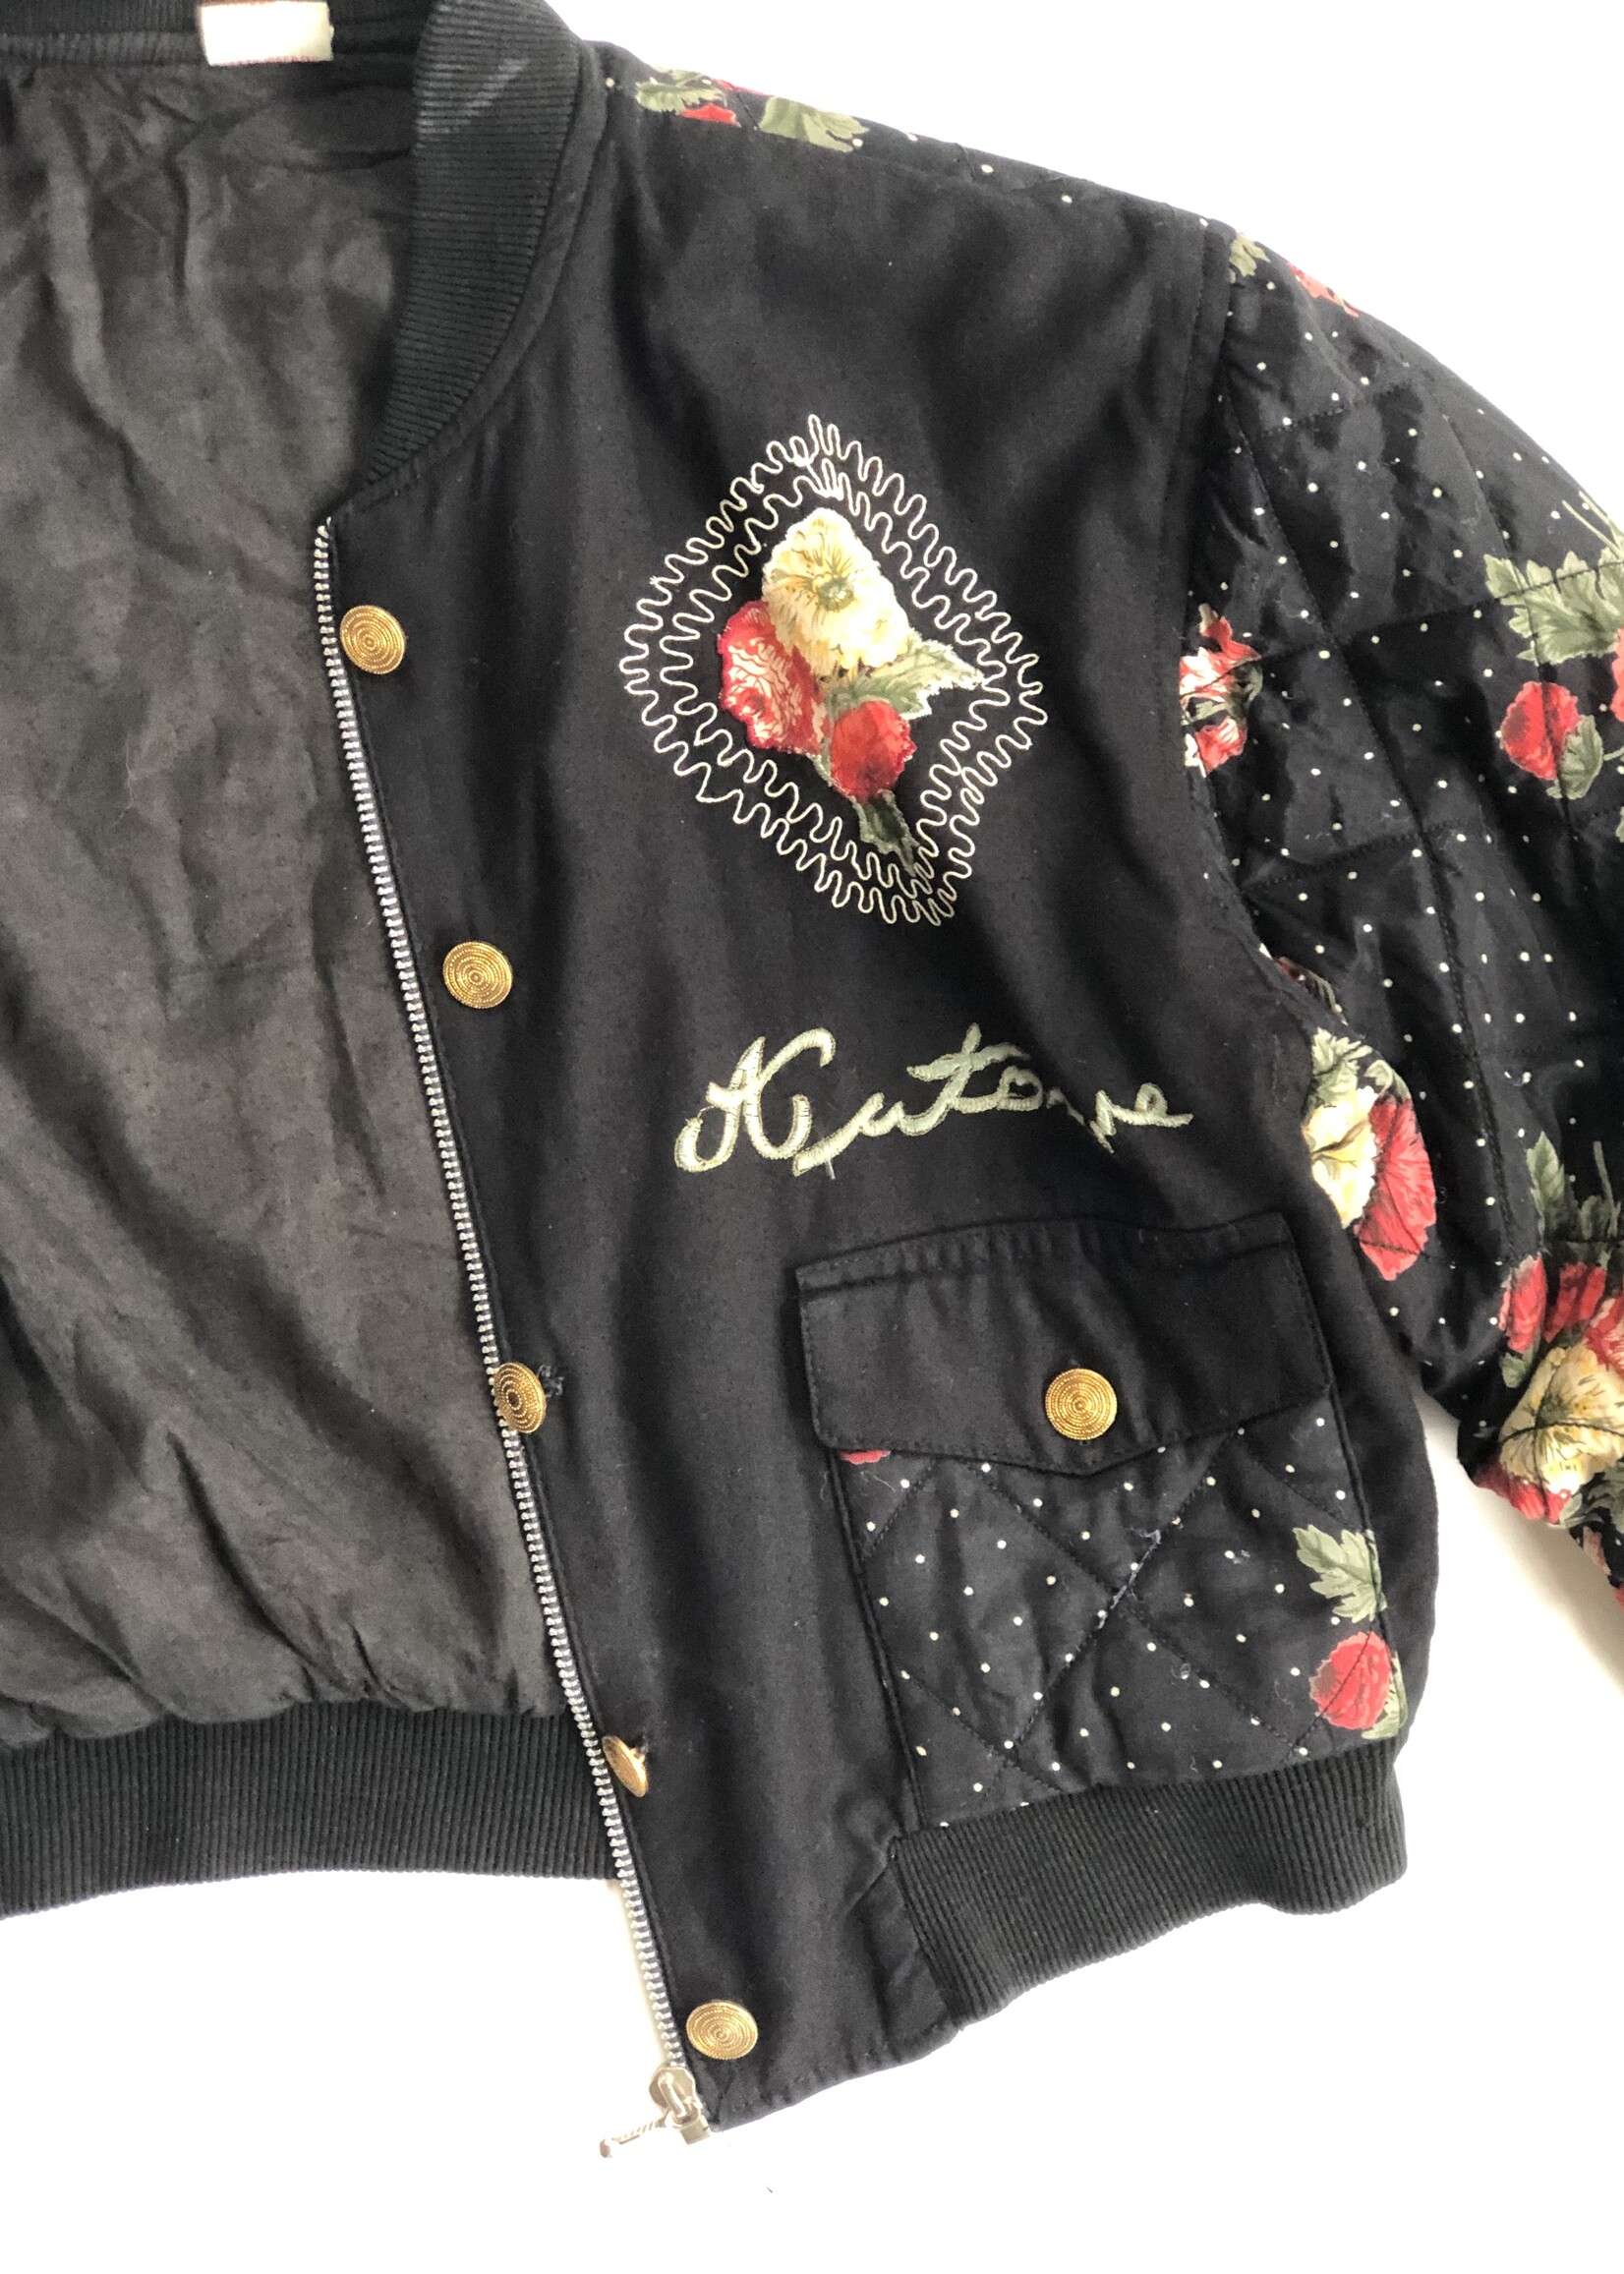 Vintage Black floral bomber jacket 6-8y